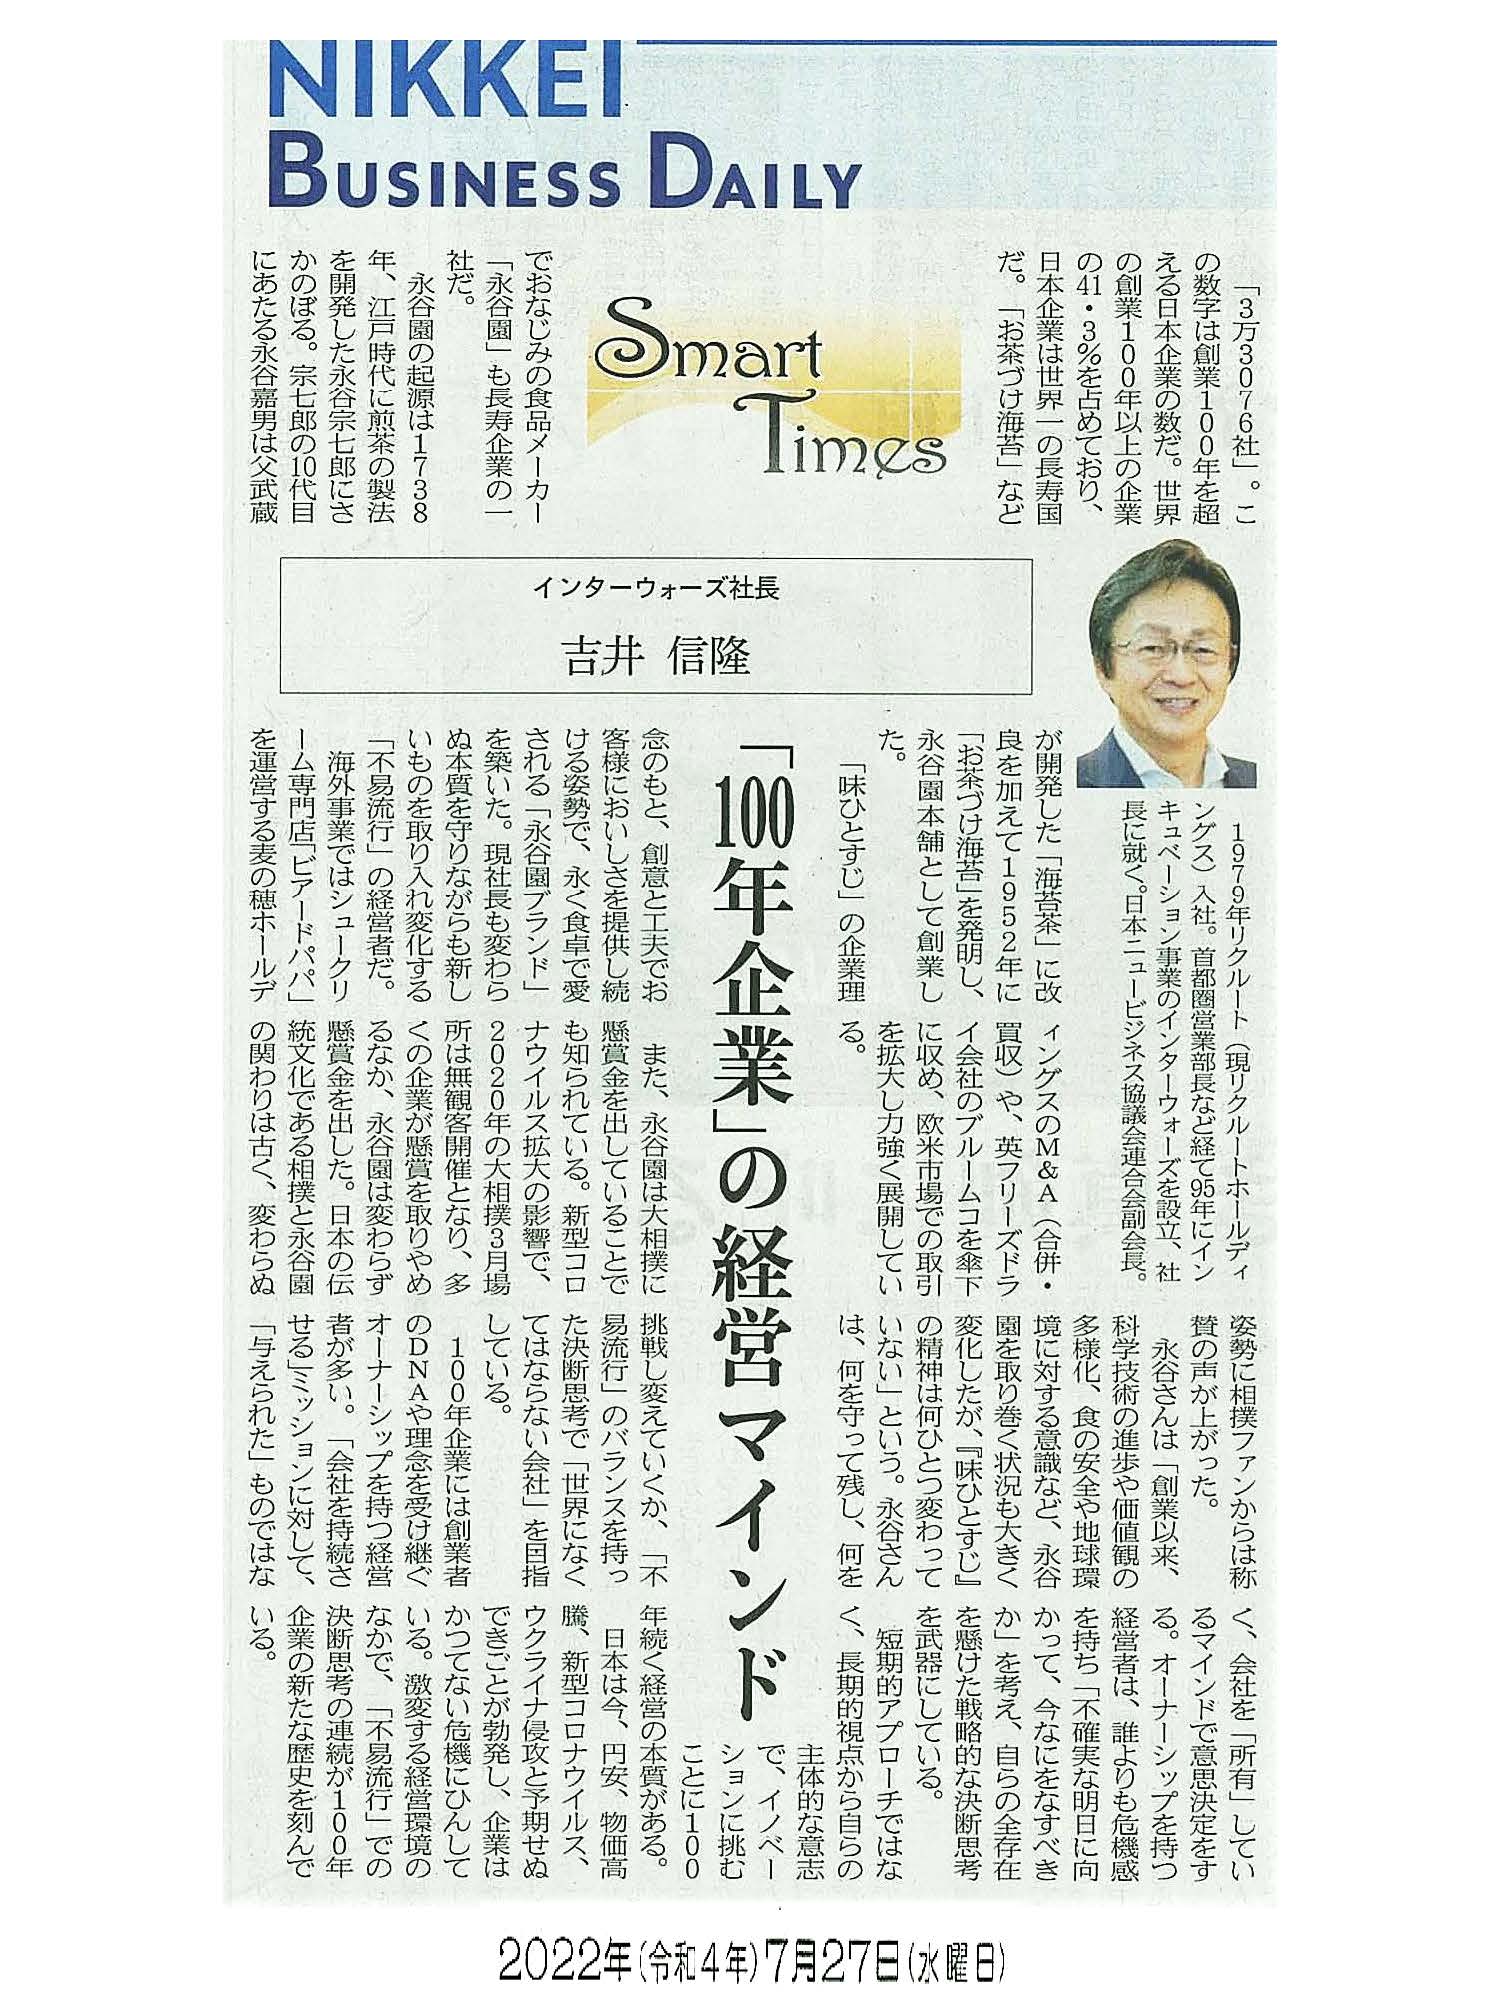 日経産業新聞 Smart Times「100年企業の経営マインド」